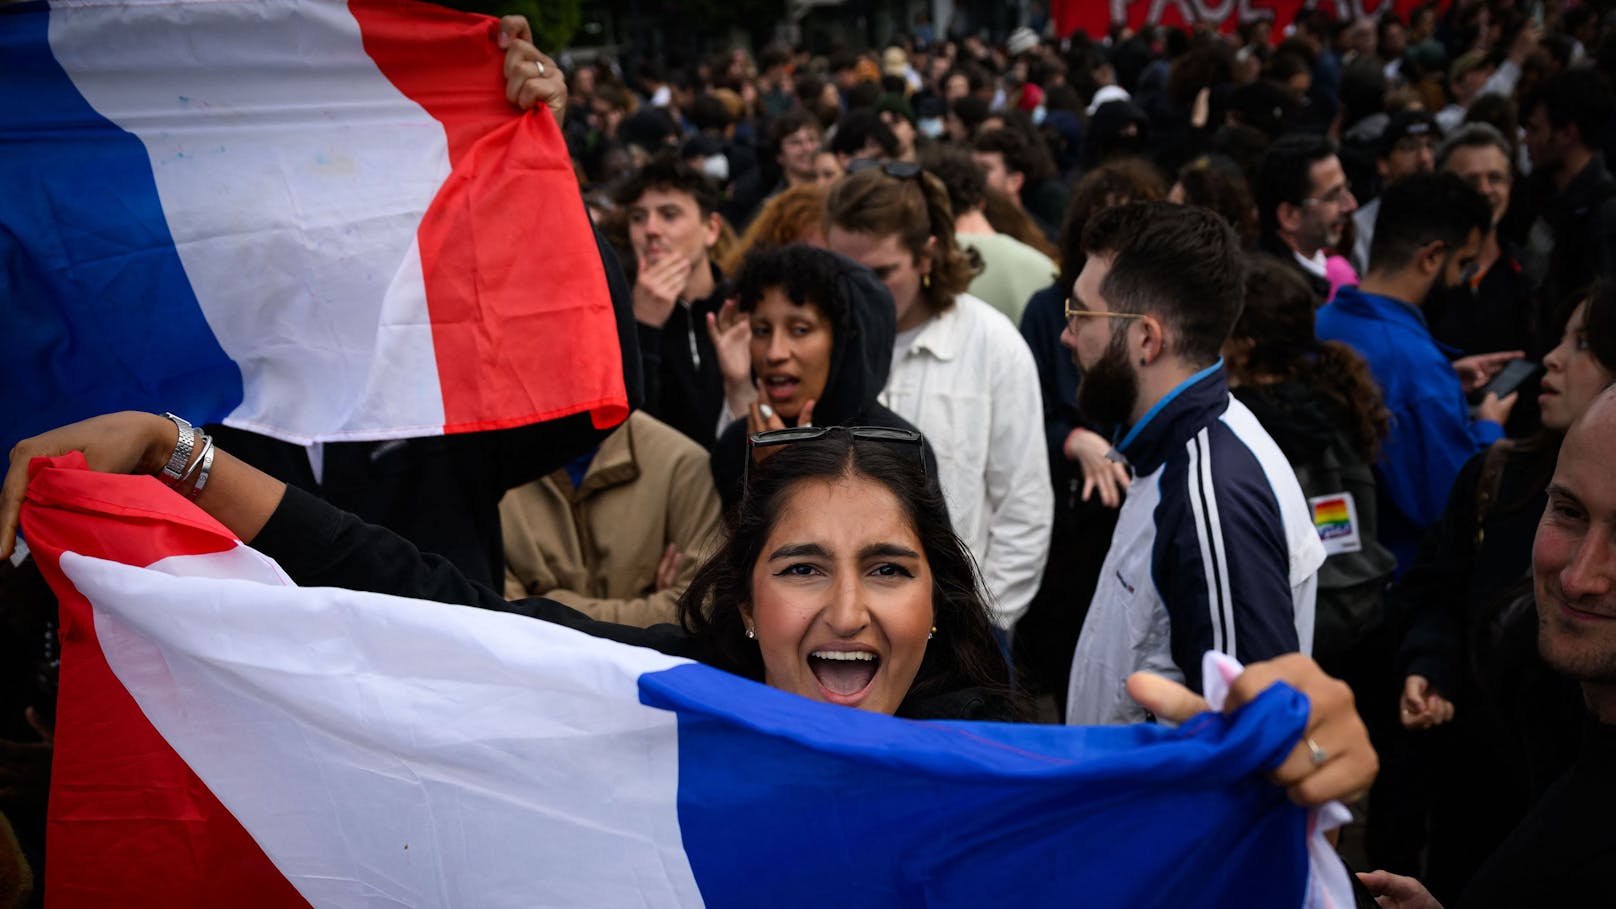 Frankreich: "Vom Linksrutsch zu sprechen, ist Unsinn"